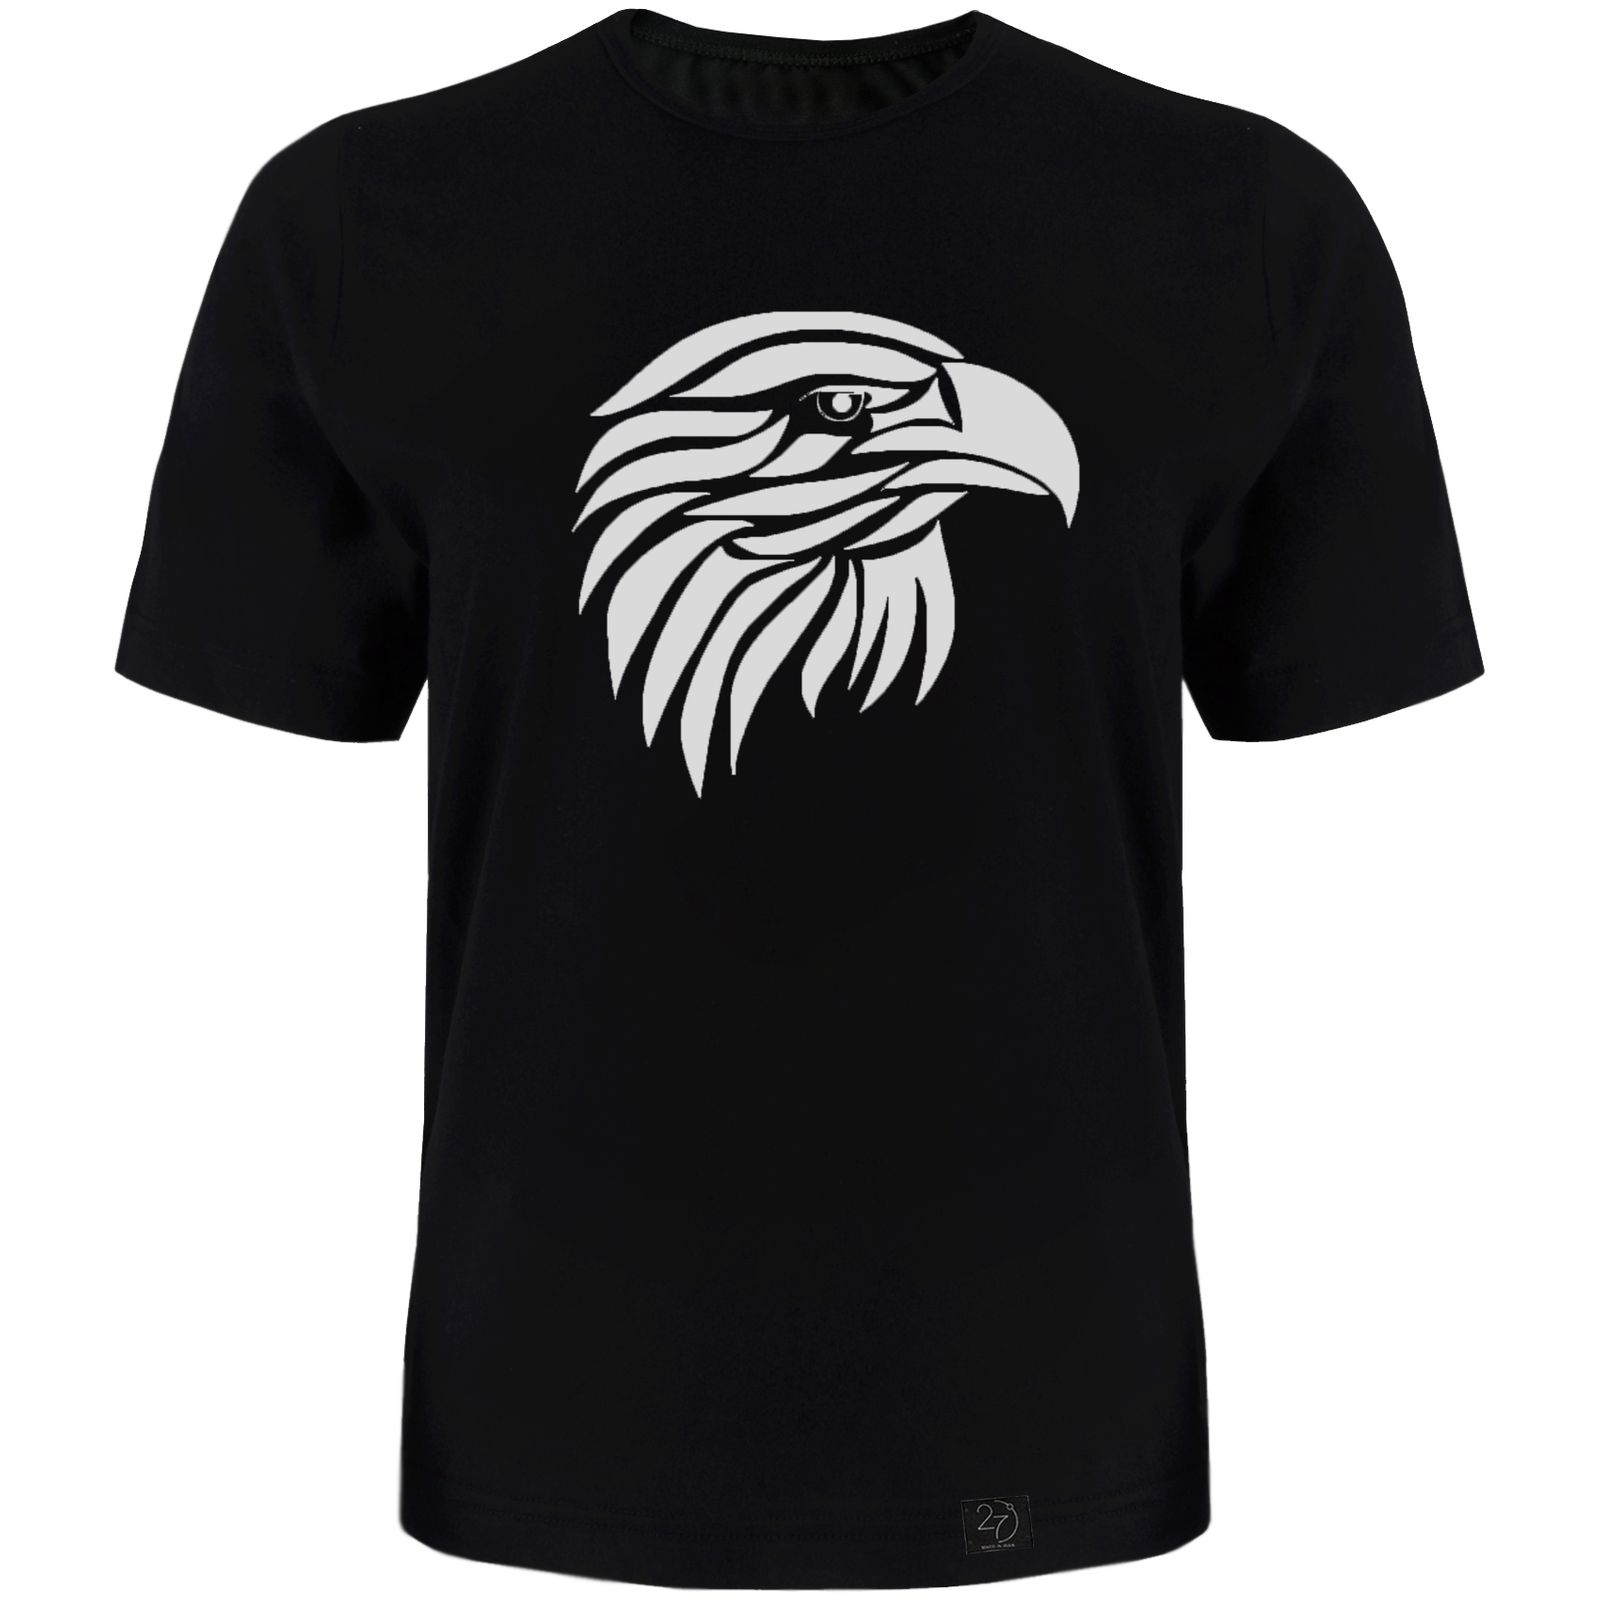 تی شرت آستین کوتاه مردانه 27 طرح عقاب کد TR05 رنگ مشکی -  - 1